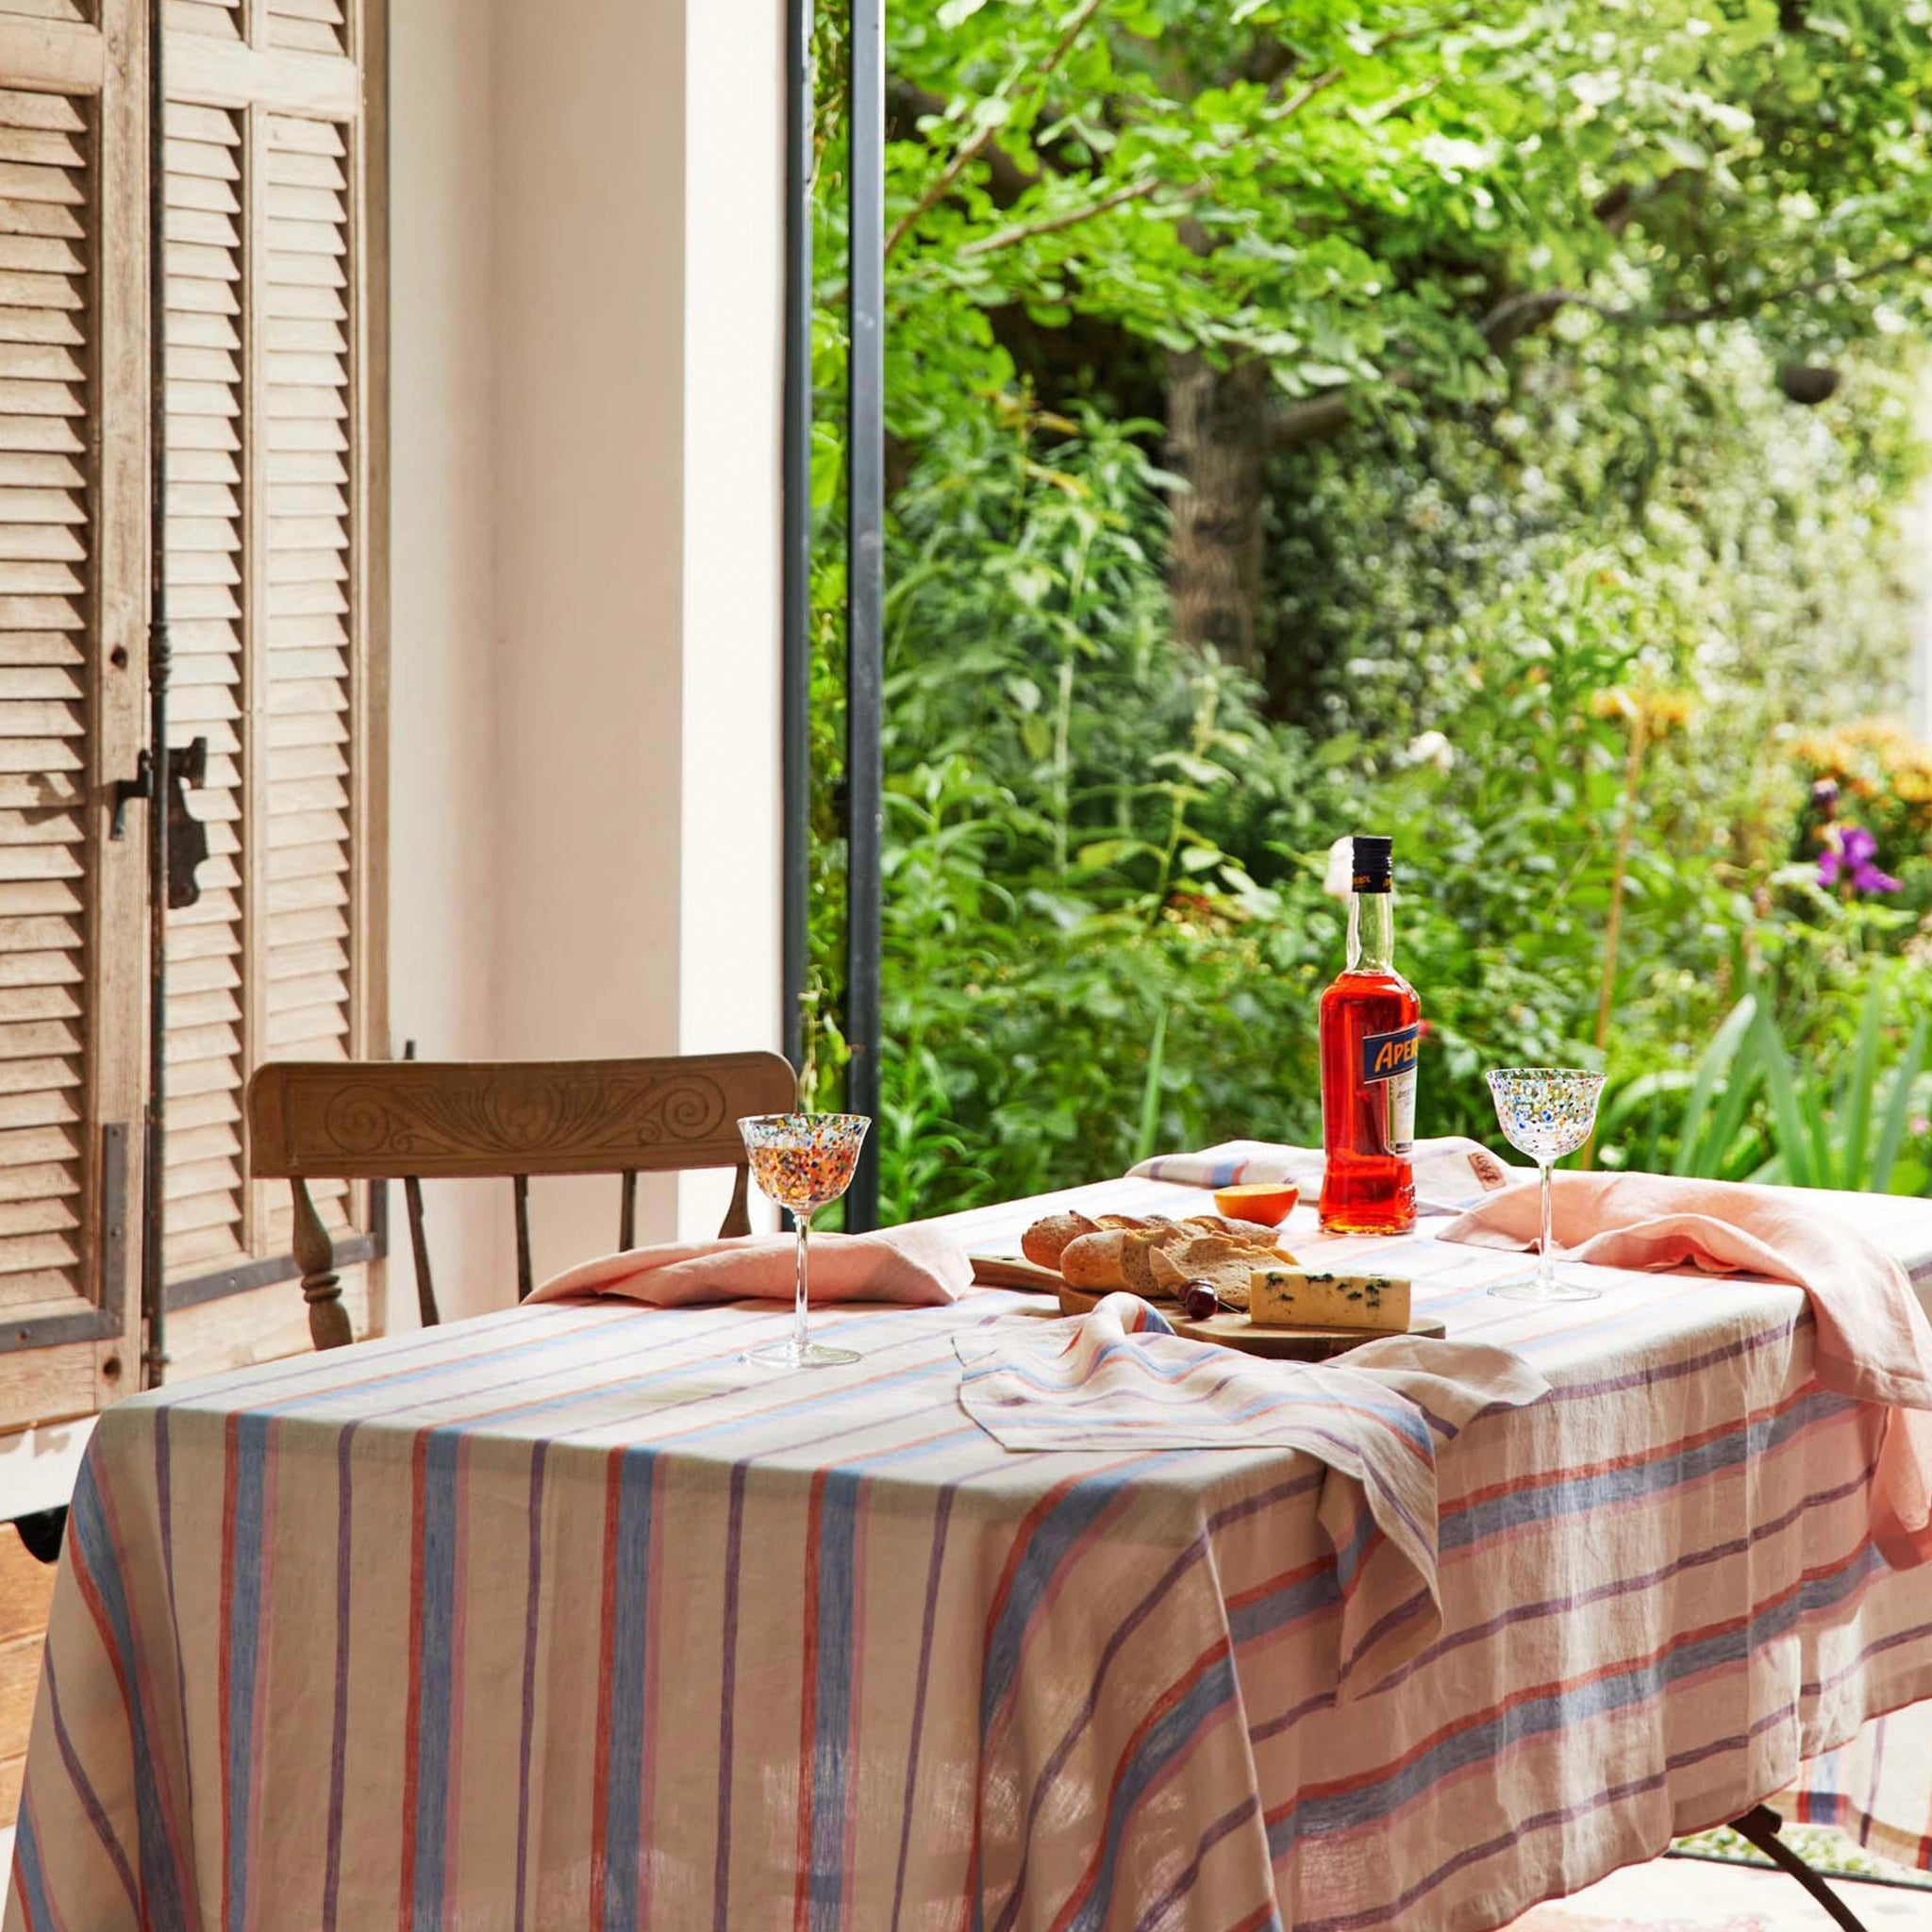 Kip & Co Woven Linen Napkin Set of 4 - Maldives Stripe - Tea Pea Home